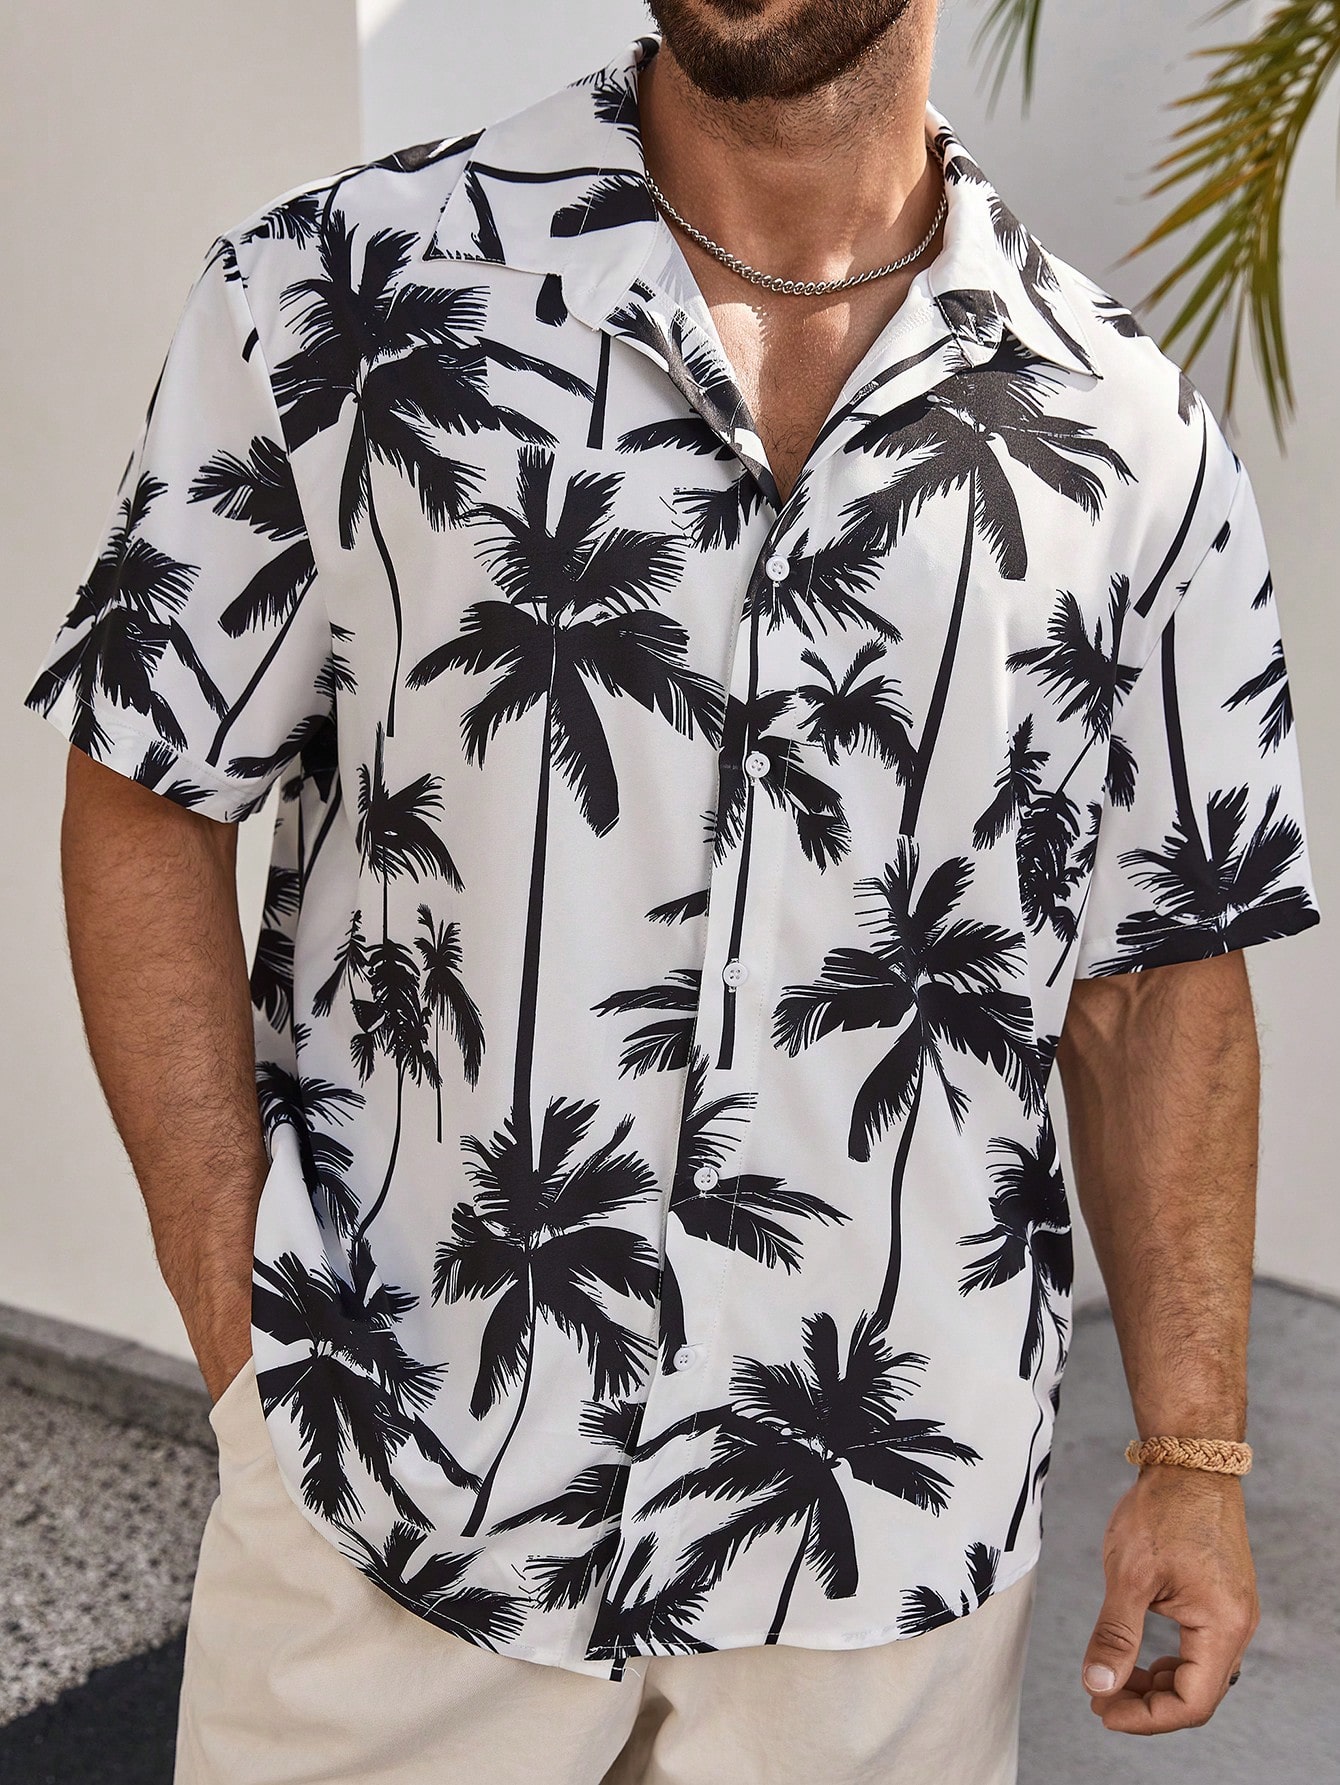 Мужская рубашка с коротким рукавом Manfinity RSRT Plus с цифровым принтом пальм, черное и белое ferocious wolf summer 3d printed men